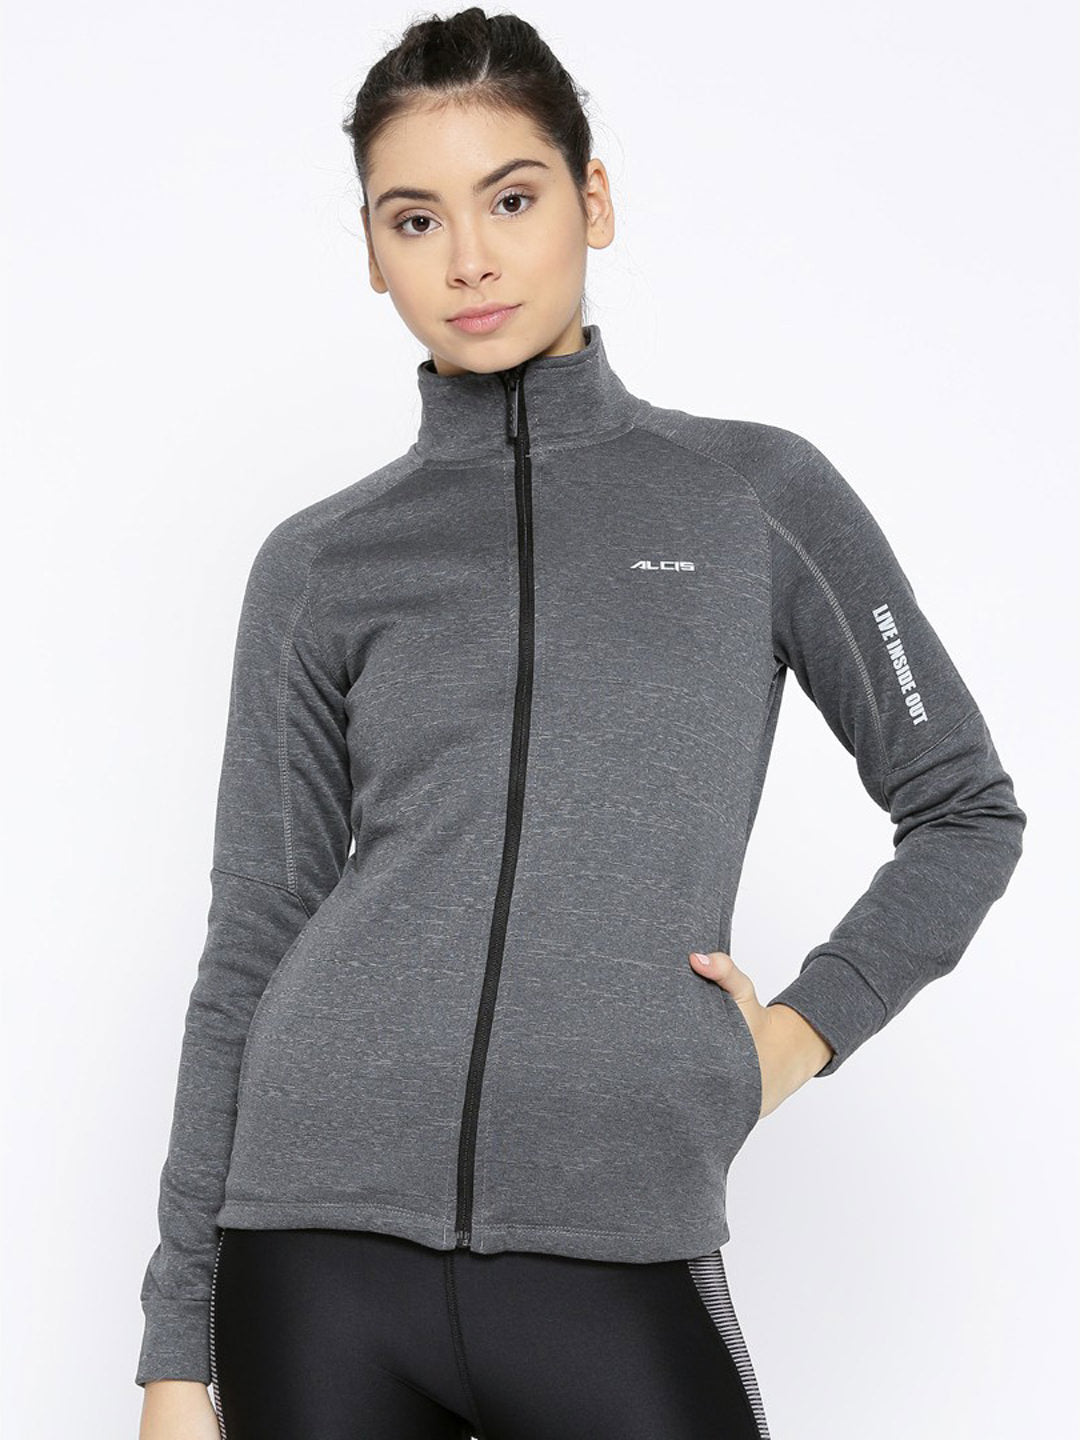 Alcis Women Charcoal Grey Solid Sweatshirt ECMJBWJK0021-XS